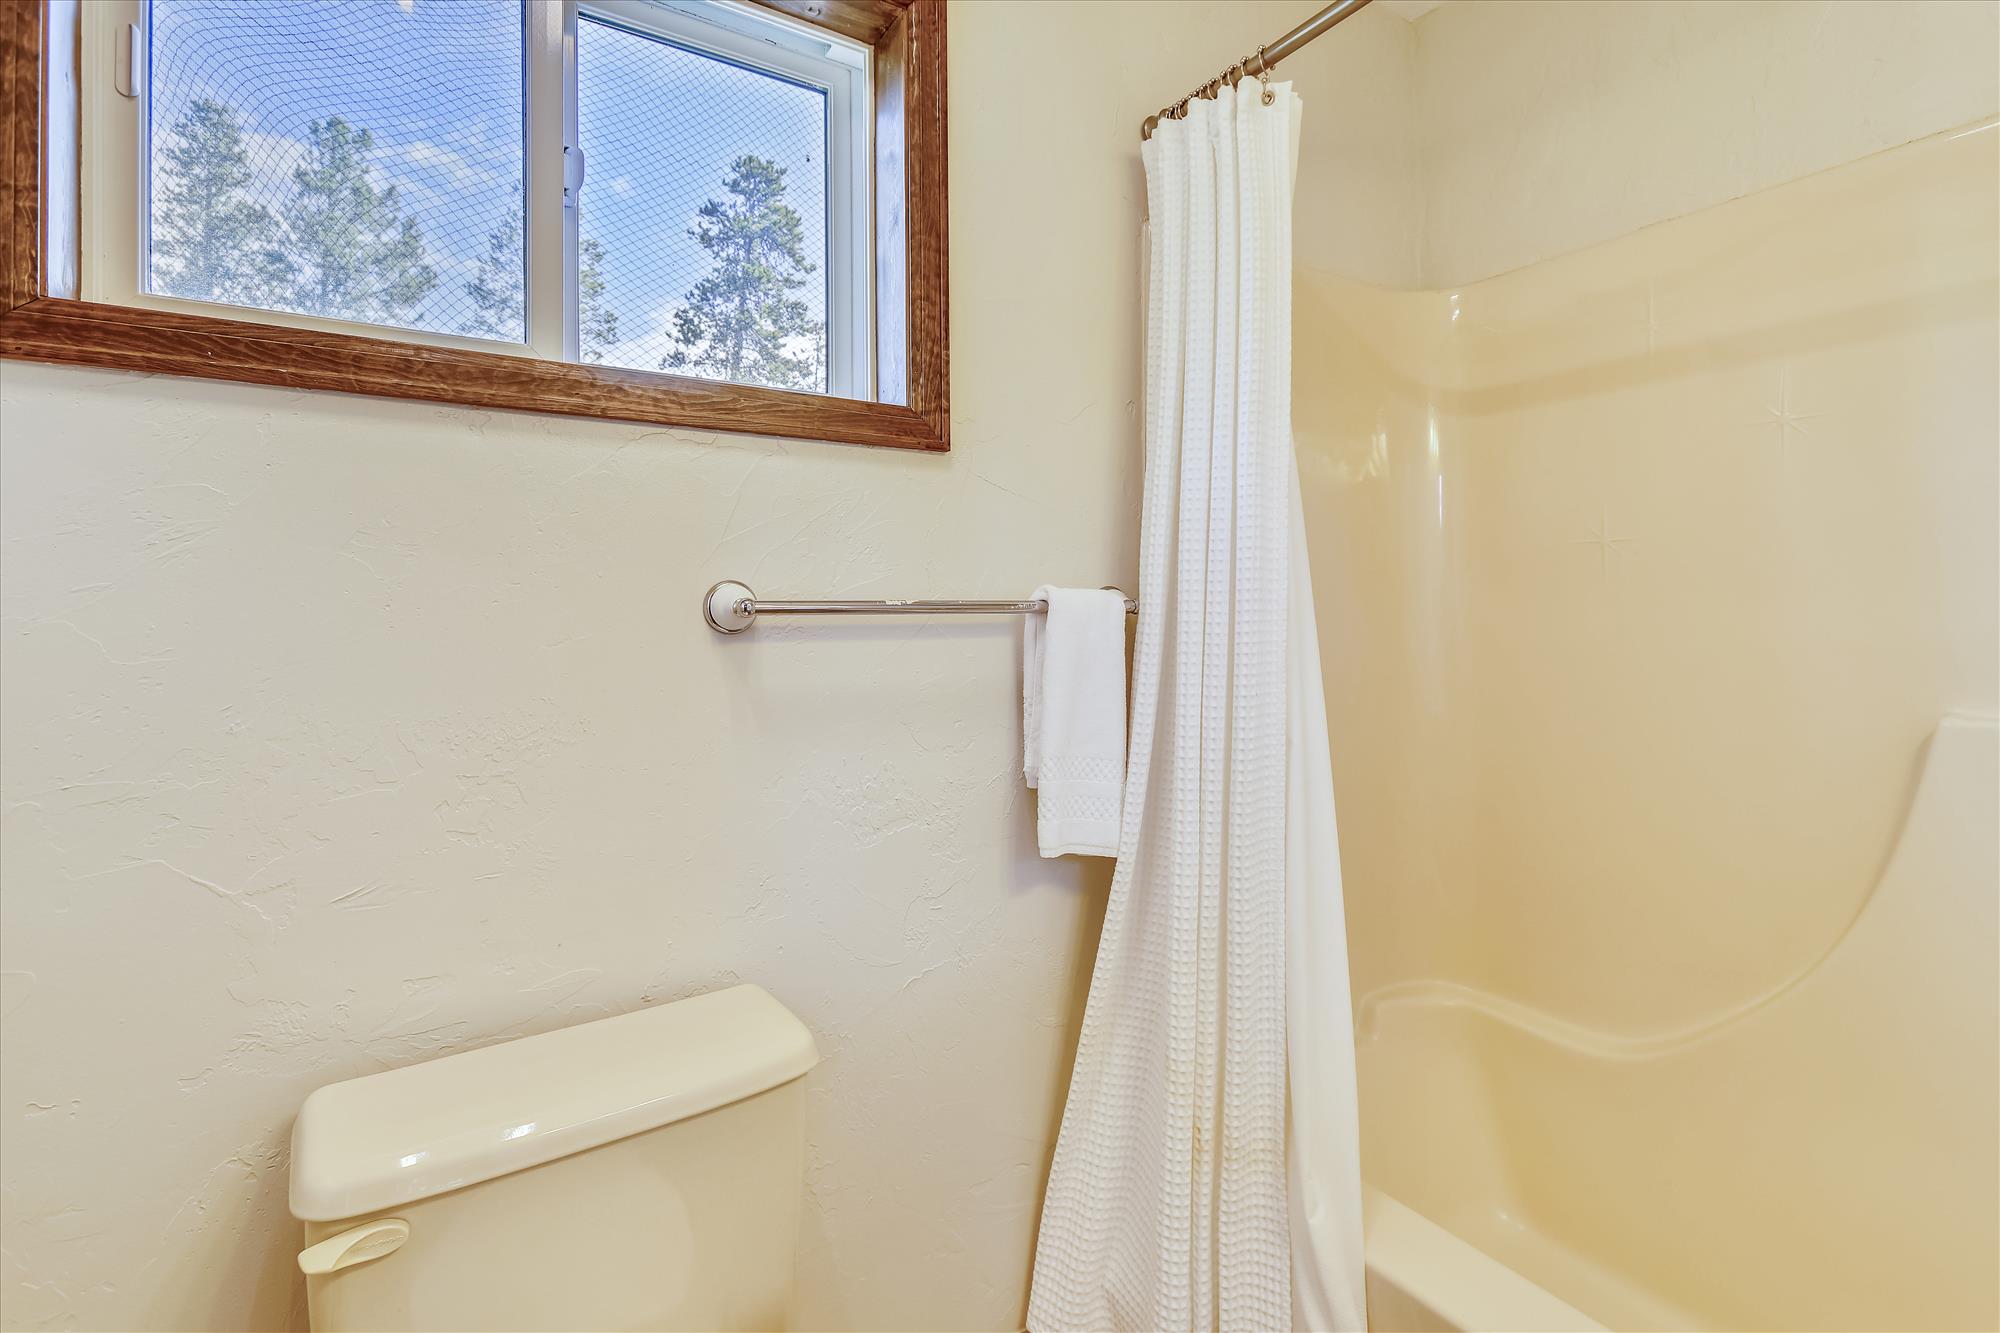 Additional view of upper level double queen bathroom - Calderon De La Breck Breckenridge Vacation Rental